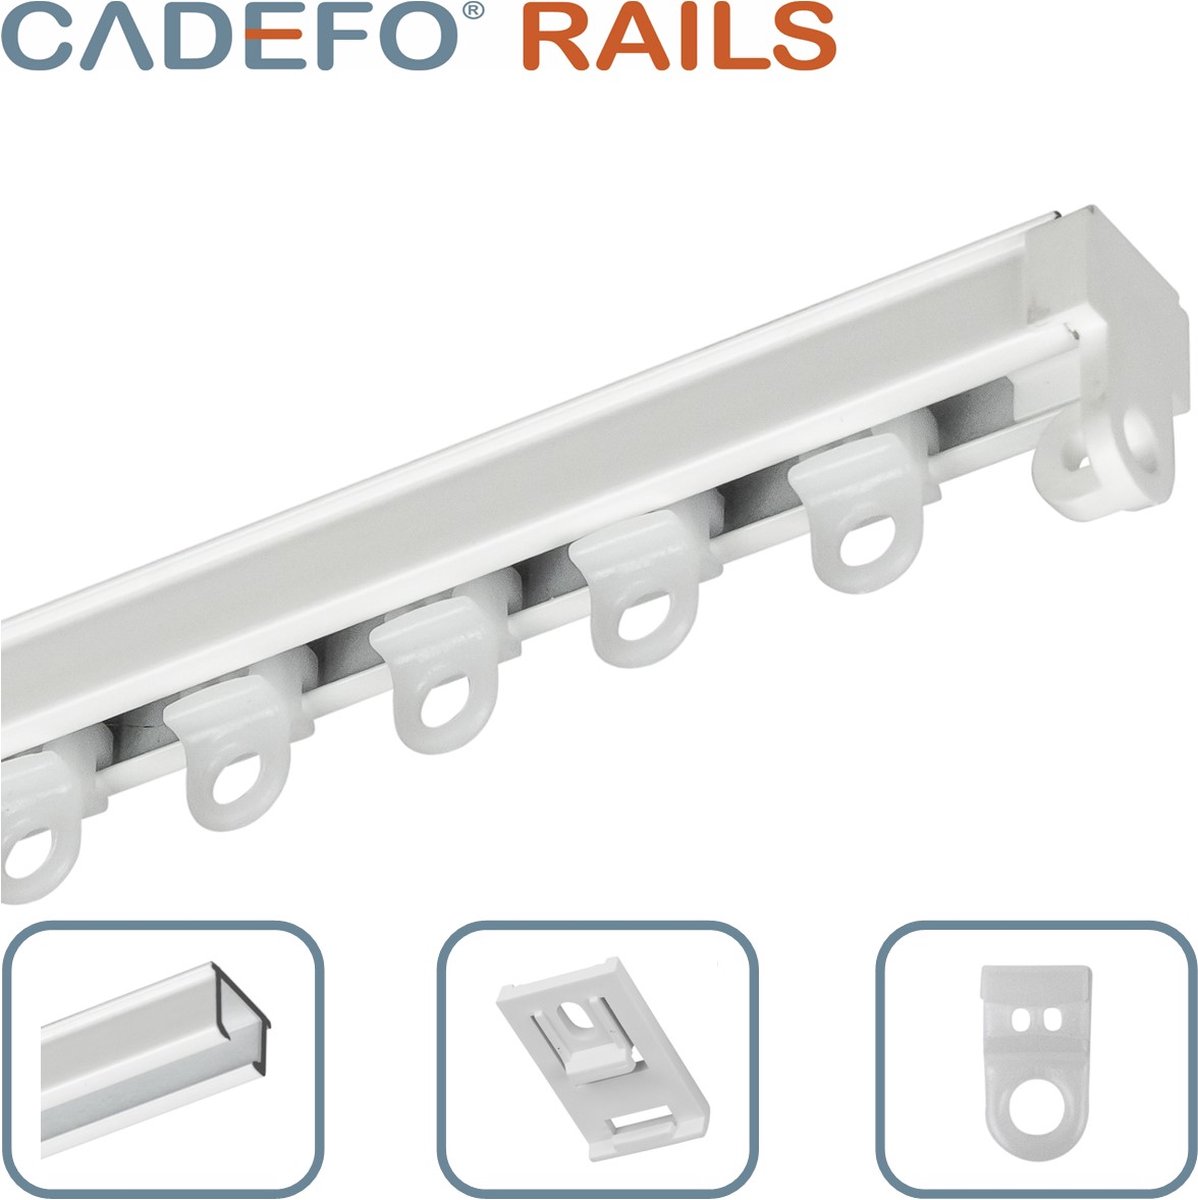 CADEFO RAILS (501 - 550 cm) Gordijnrails - Compleet op maat! - UIT 1 STUK - Leverbaar tot 6 meter - Plafondbevestiging - Lengte 526 cm